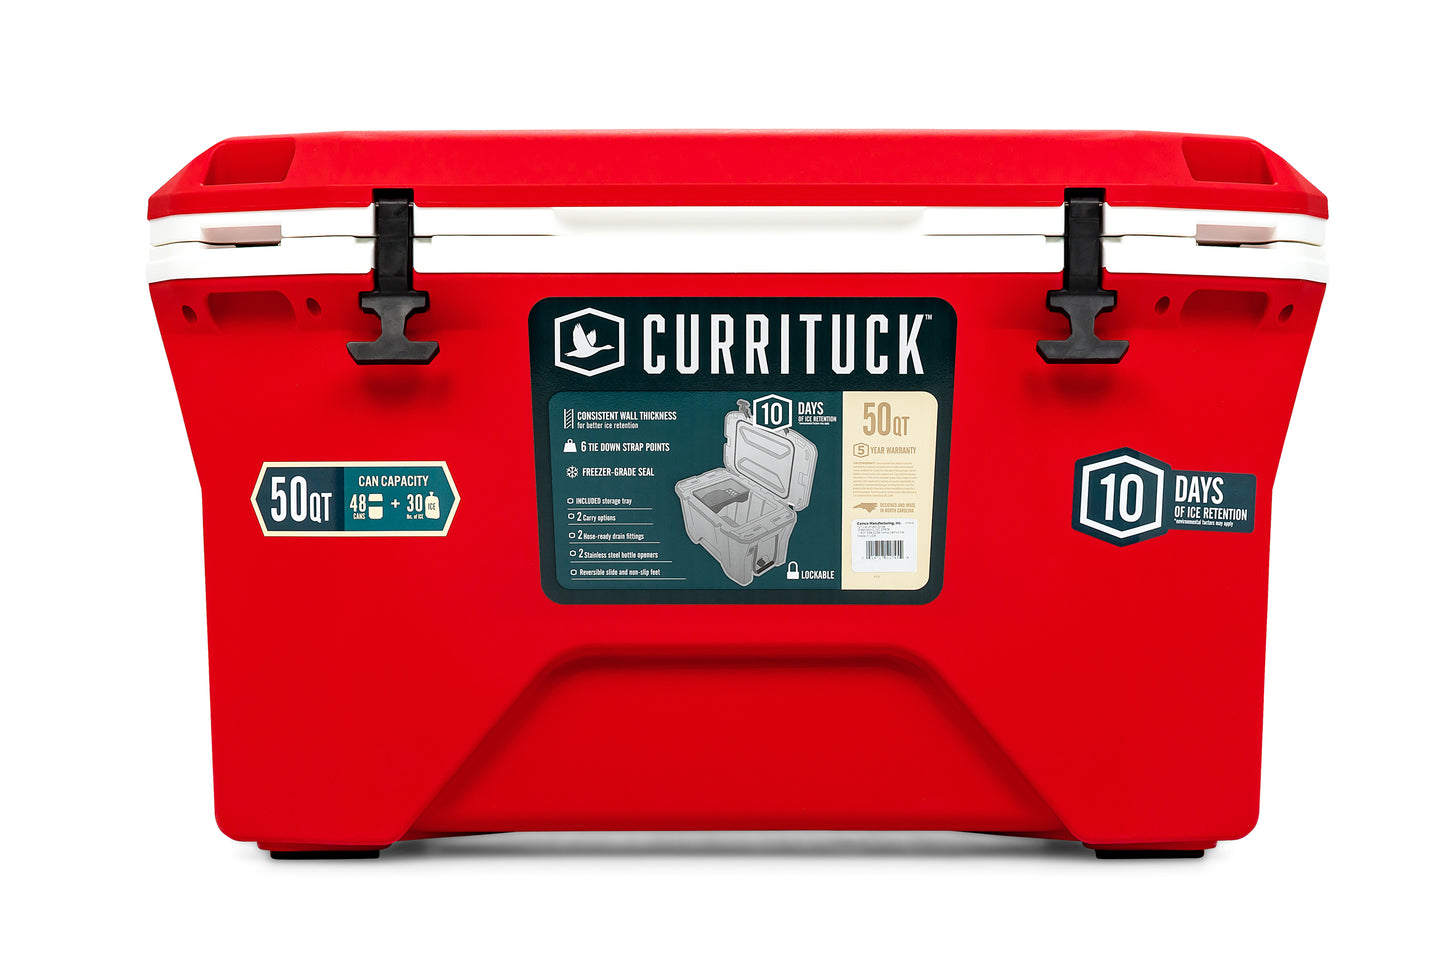 Currituck 30 and 50 Quart Premium Coolers - Red & White